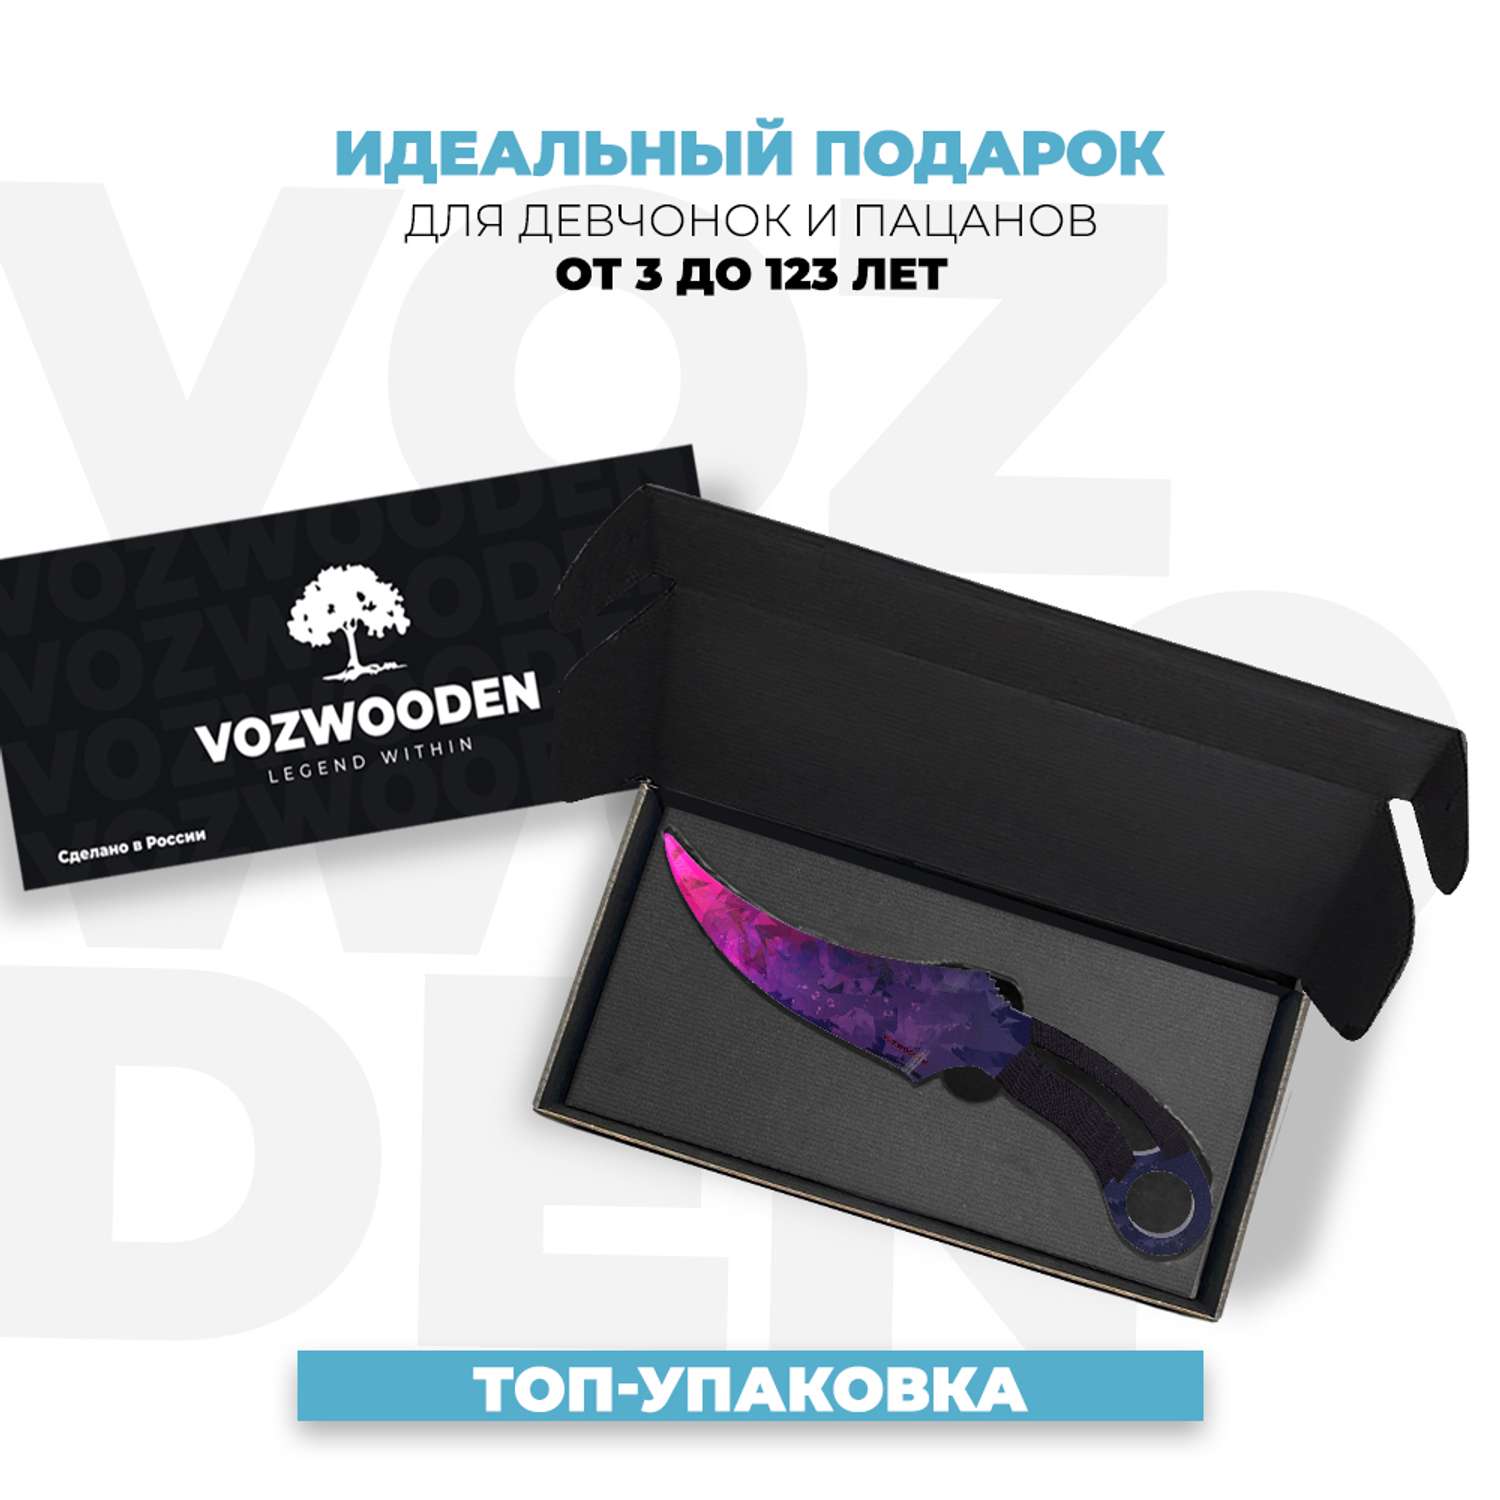 Деревянный нож VozWooden Фанг Обсидиан Стандофф 2 - фото 2